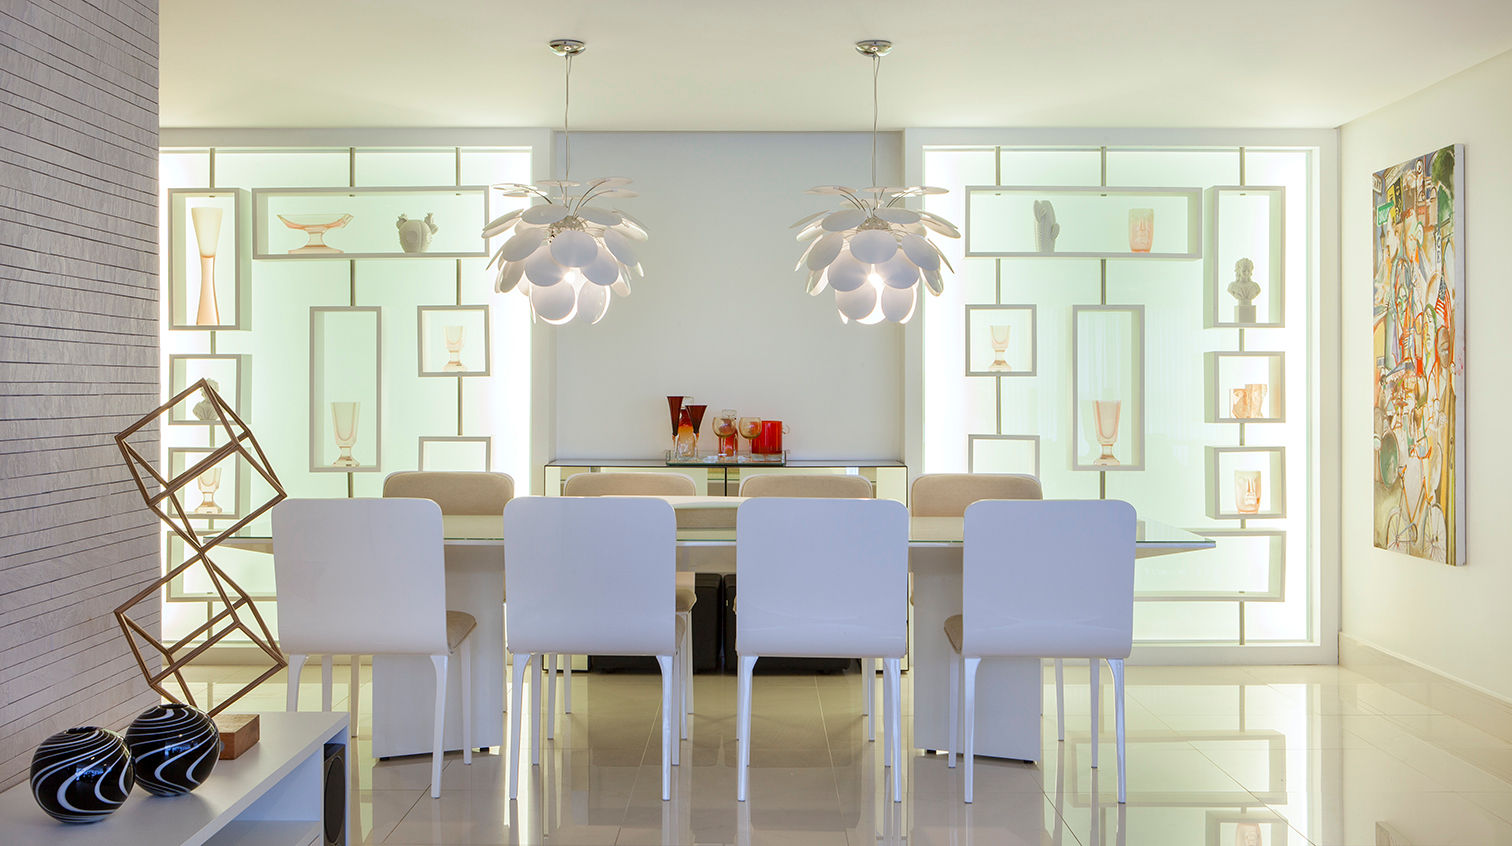 Apartamento 180m² em Boa Viagem, André Caricio Arquitetura André Caricio Arquitetura Dining room Tables